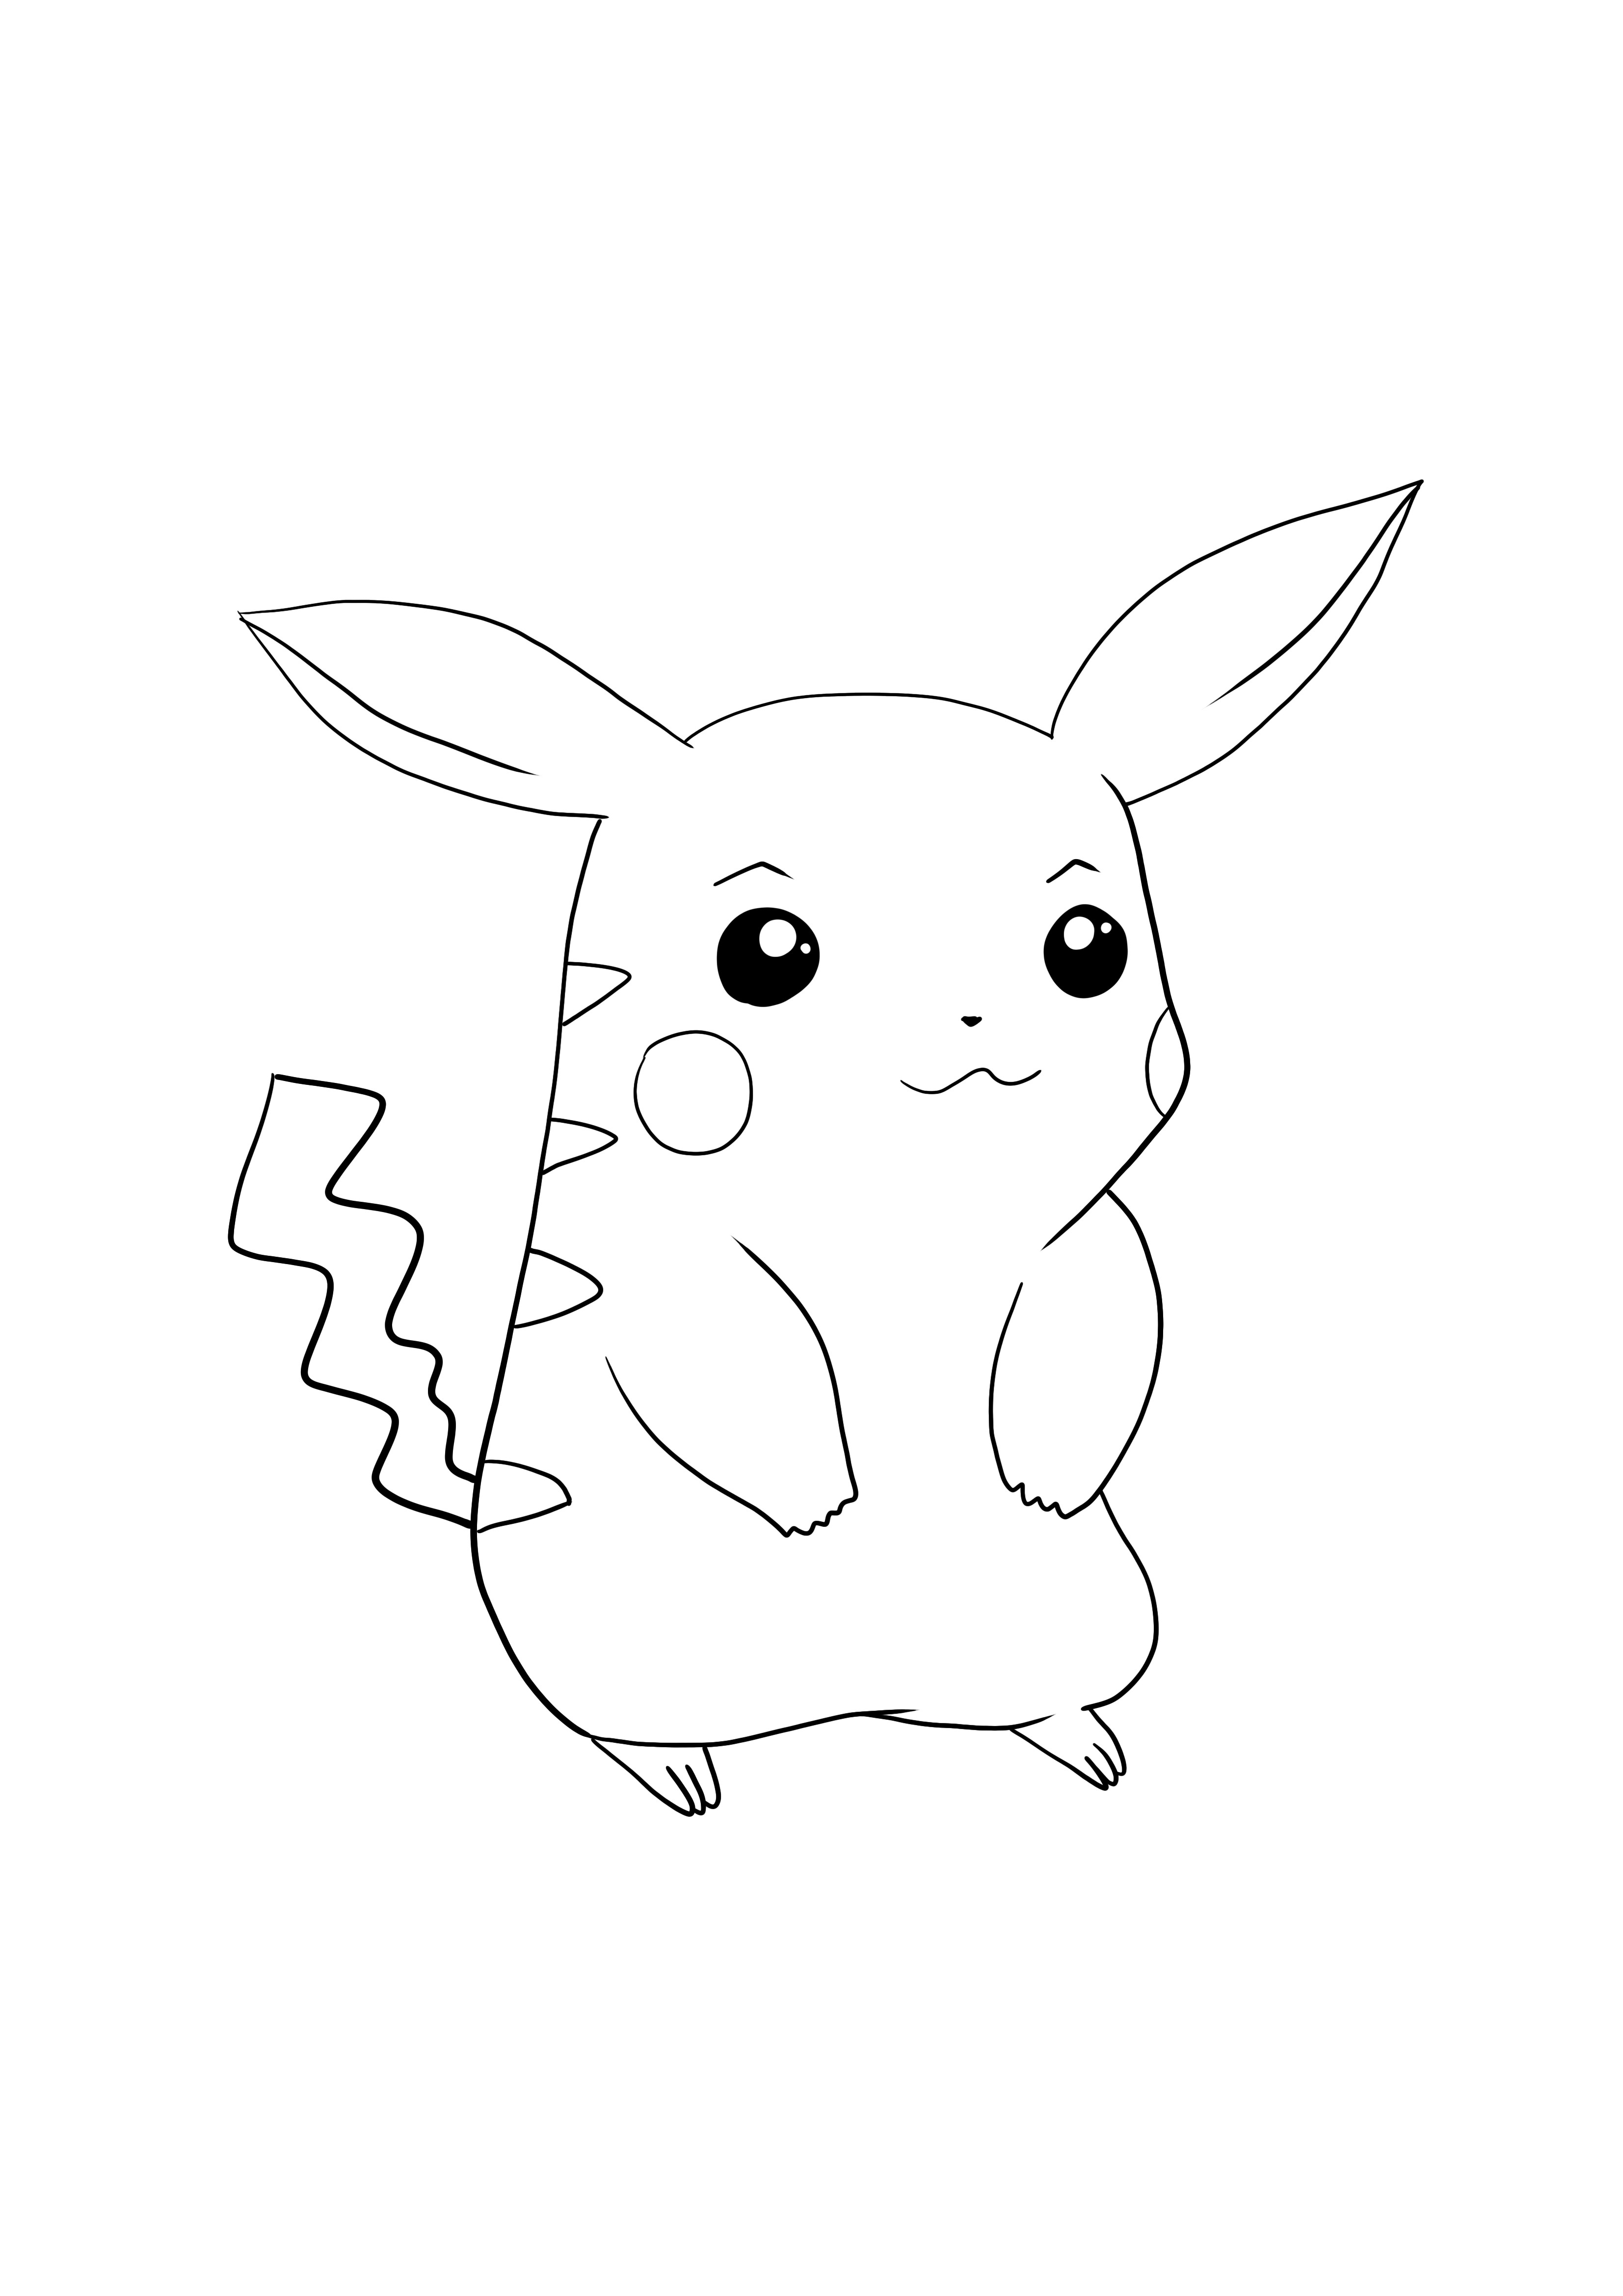 Descărcați Pikachu-Pokémon go și pagina gratuită colorată